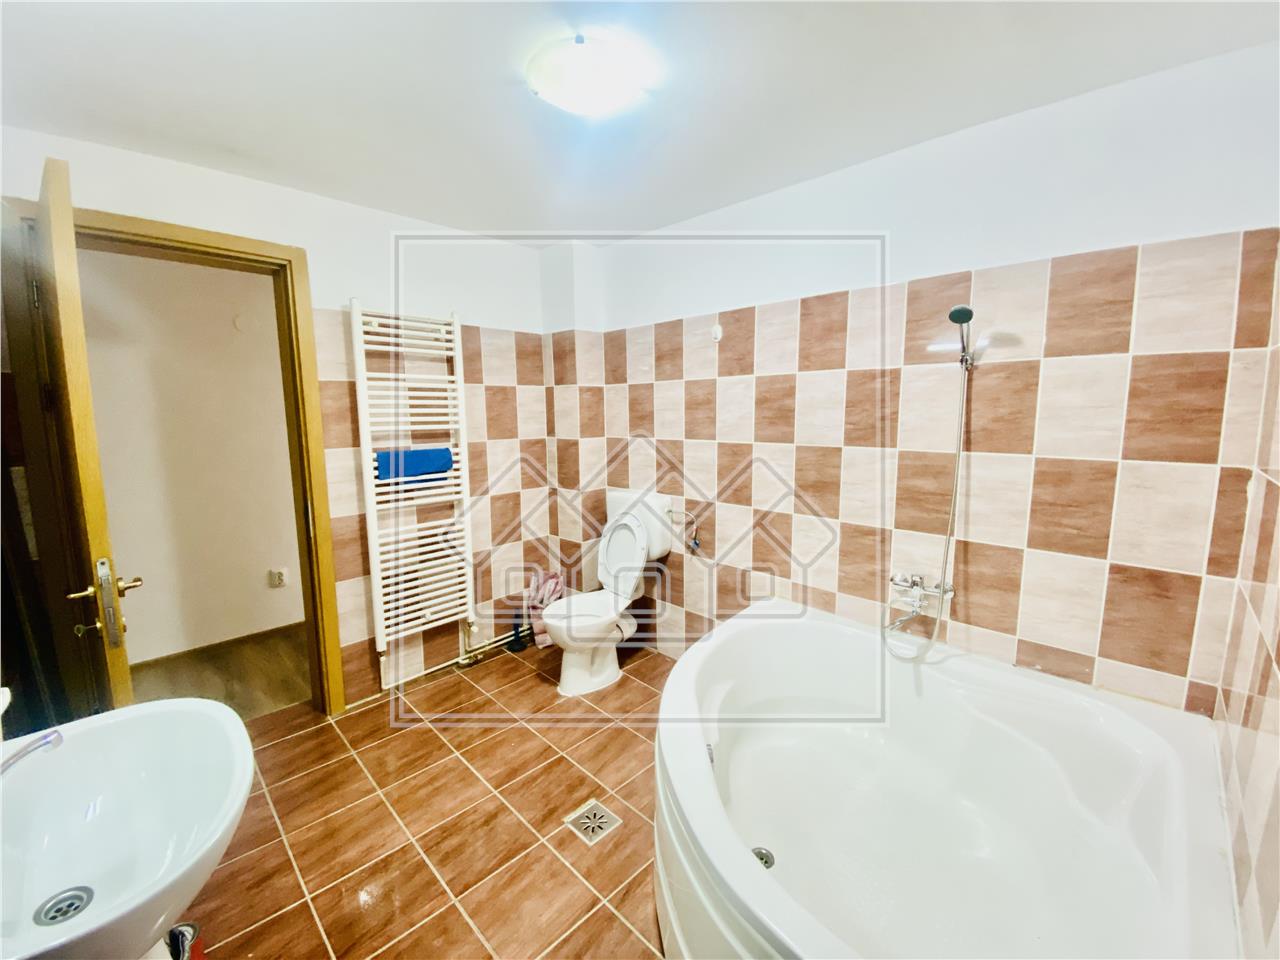 Apartament de vanzare in Sibiu -  3 camere -  zona Semaforului